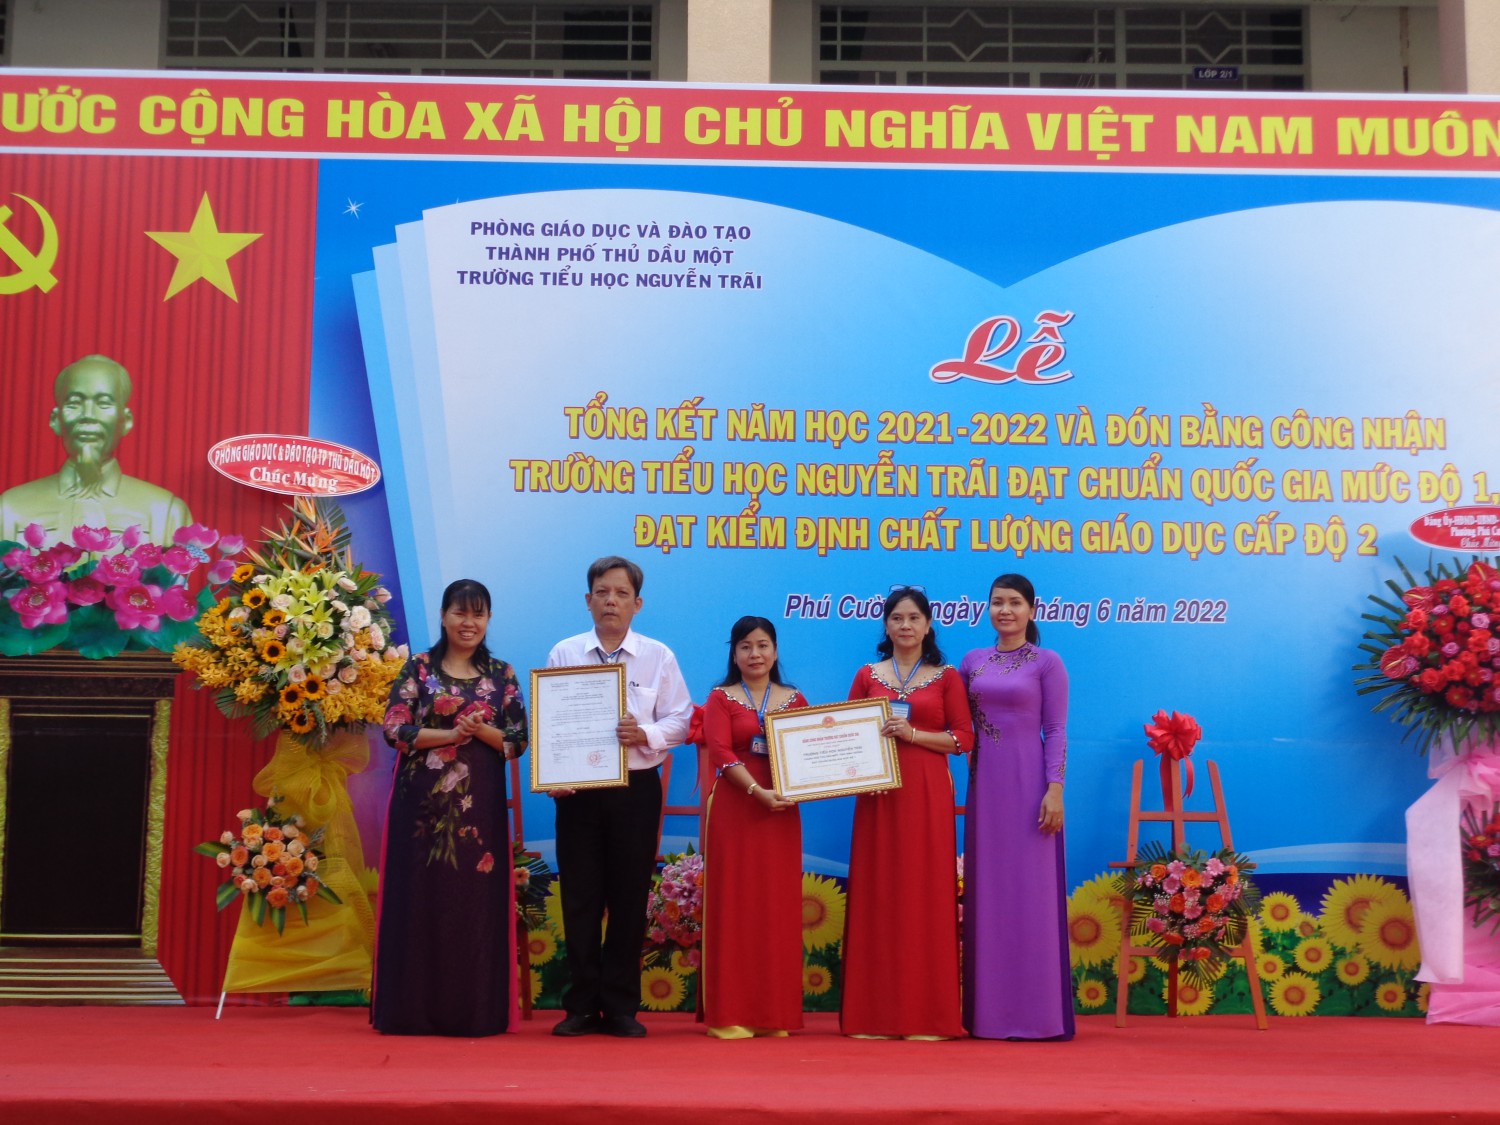 Lễ Tổng kết năm học 2021-2022 và Lễ đón bằng Công nhận trường TH Nguyễn Trãi đạt Chuẩn Quốc Gia mức độ 1, đạt Kiểm định Chất lượng Giáo dục cấp độ 2.